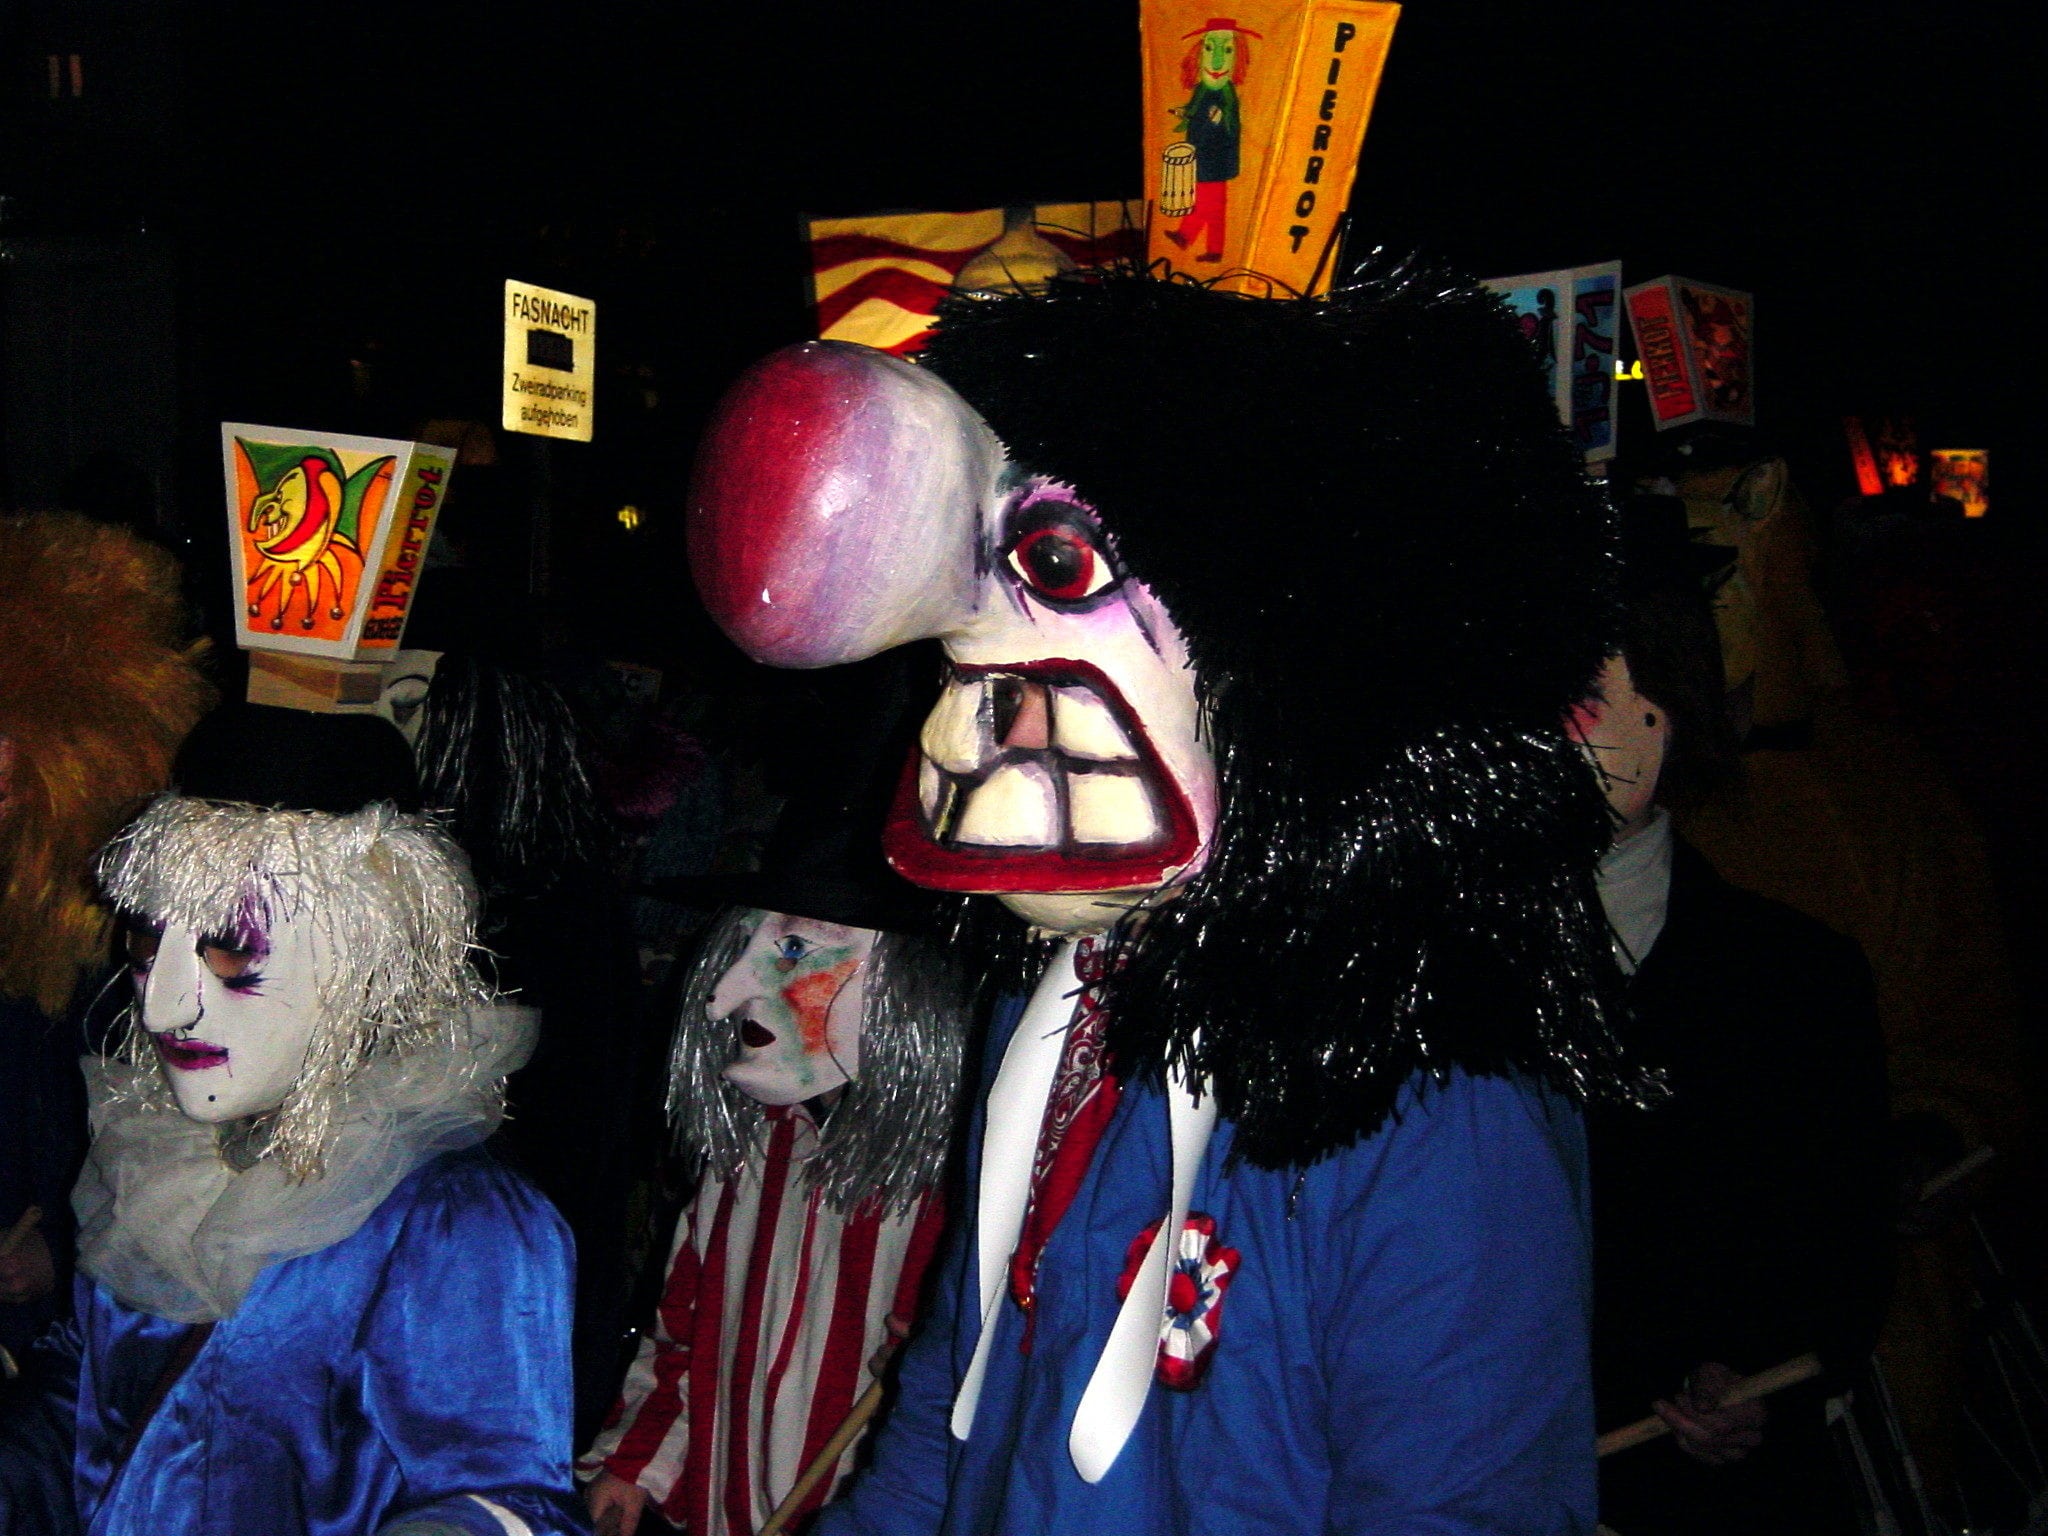 Le carnaval bâlois démarre dans la nuit (Photo Allie_Caulfield / Flickr / cc) (Photo Allie_Caulfield / Flickr / cc)